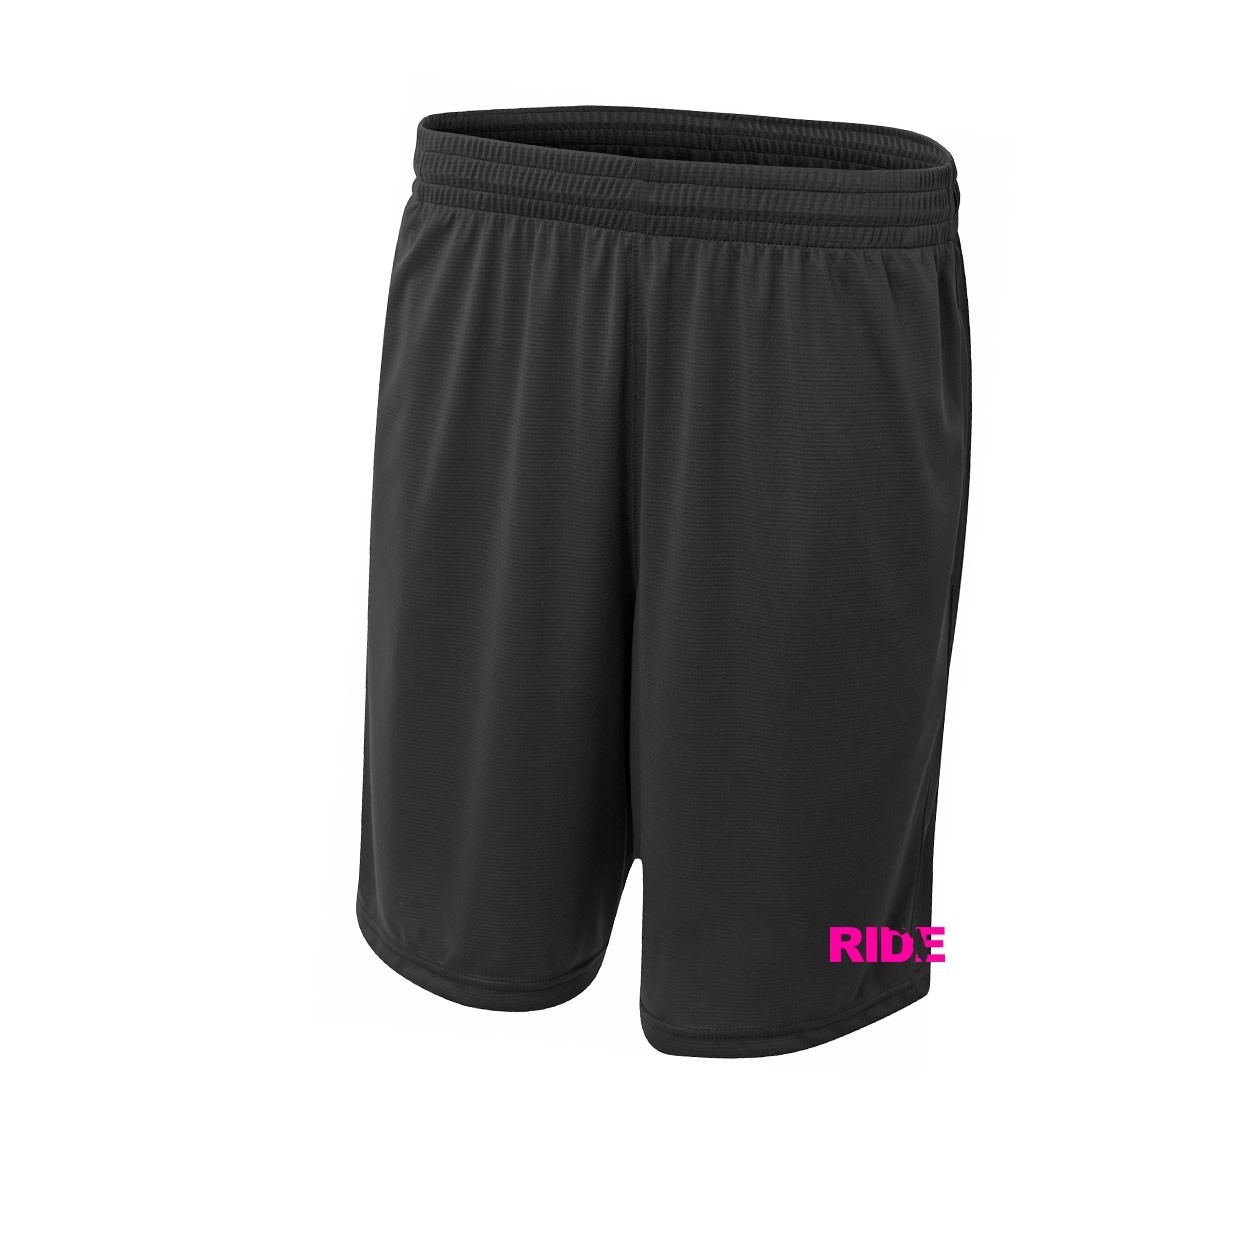 Ride Florida Classic Youth Unisex Shorts Black (Pink Logo)